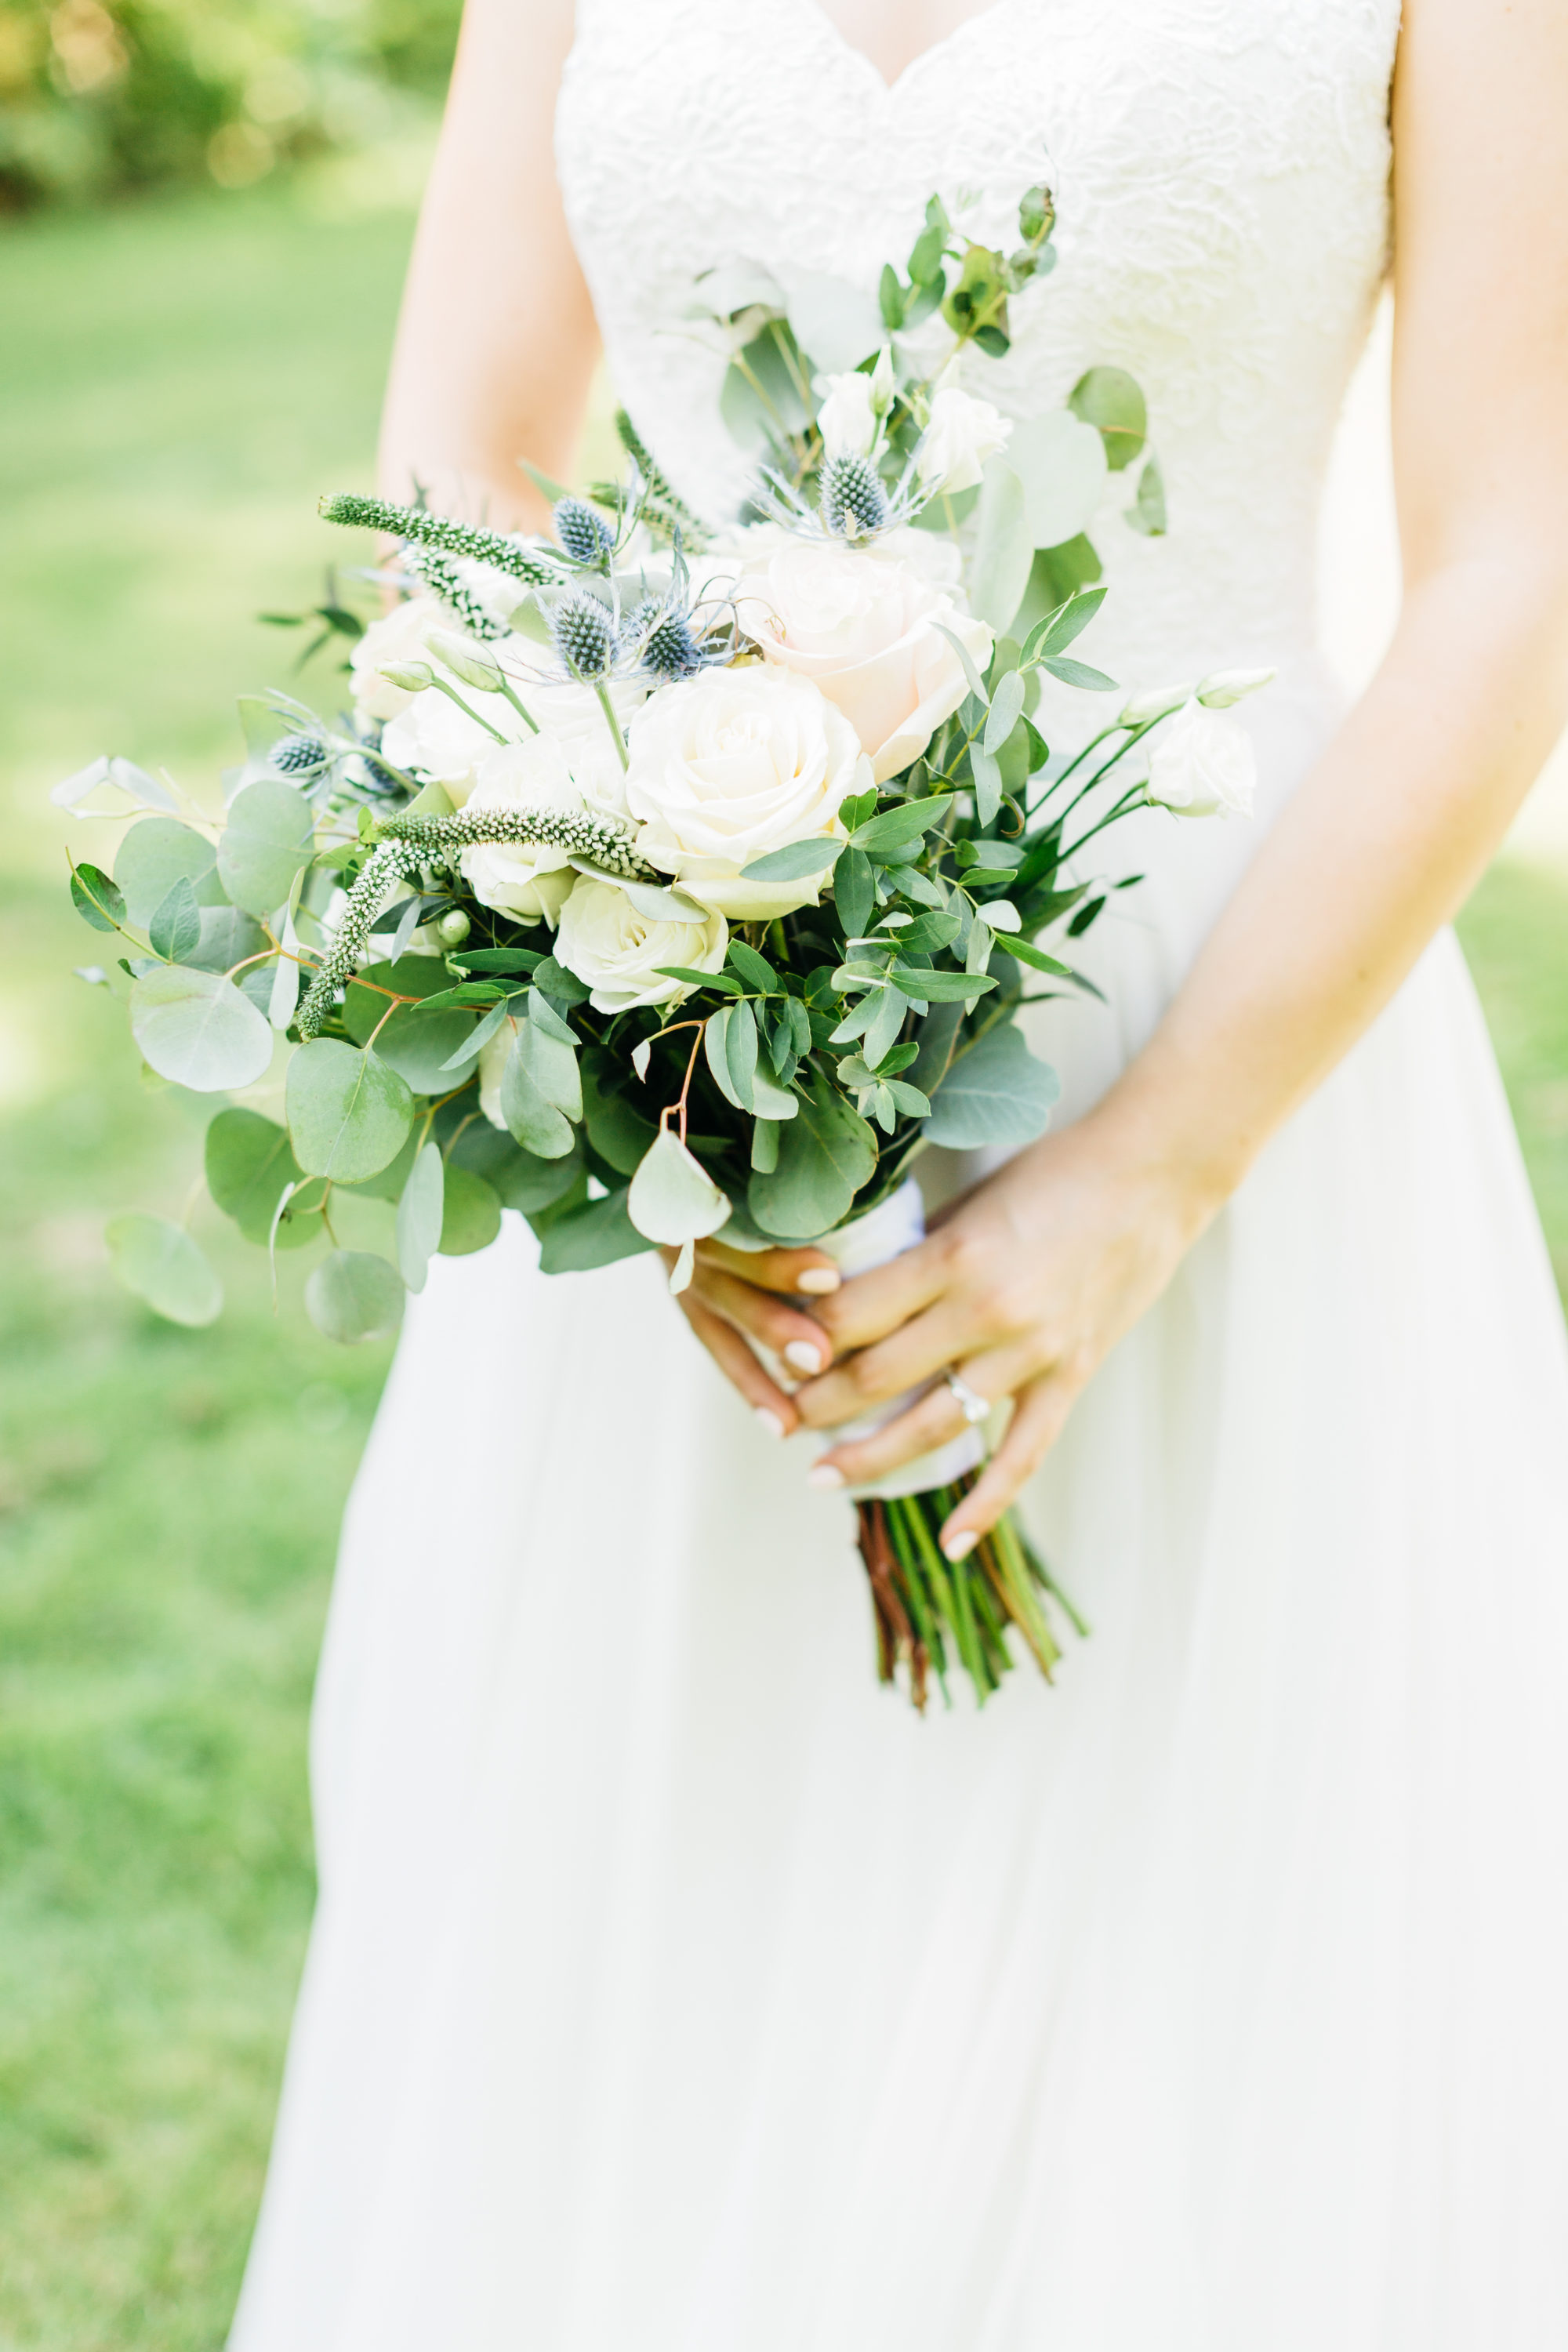 Details of bride's floral bouquet